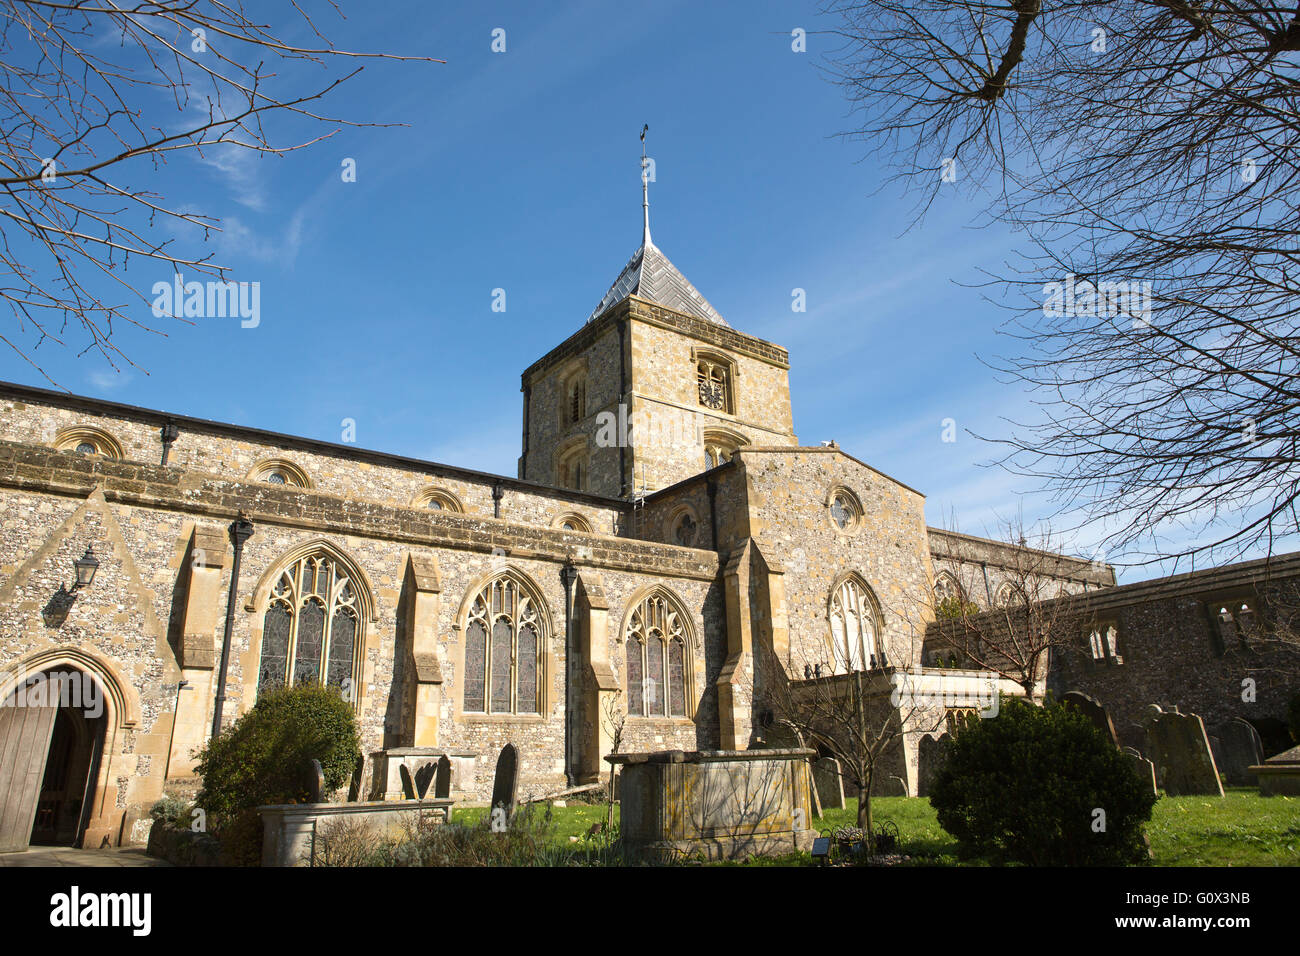 Paroisse de St Nicholas et église du prieuré à Arundel West Sussex. Journée de printemps ensoleillée avec ciel bleu. Banque D'Images